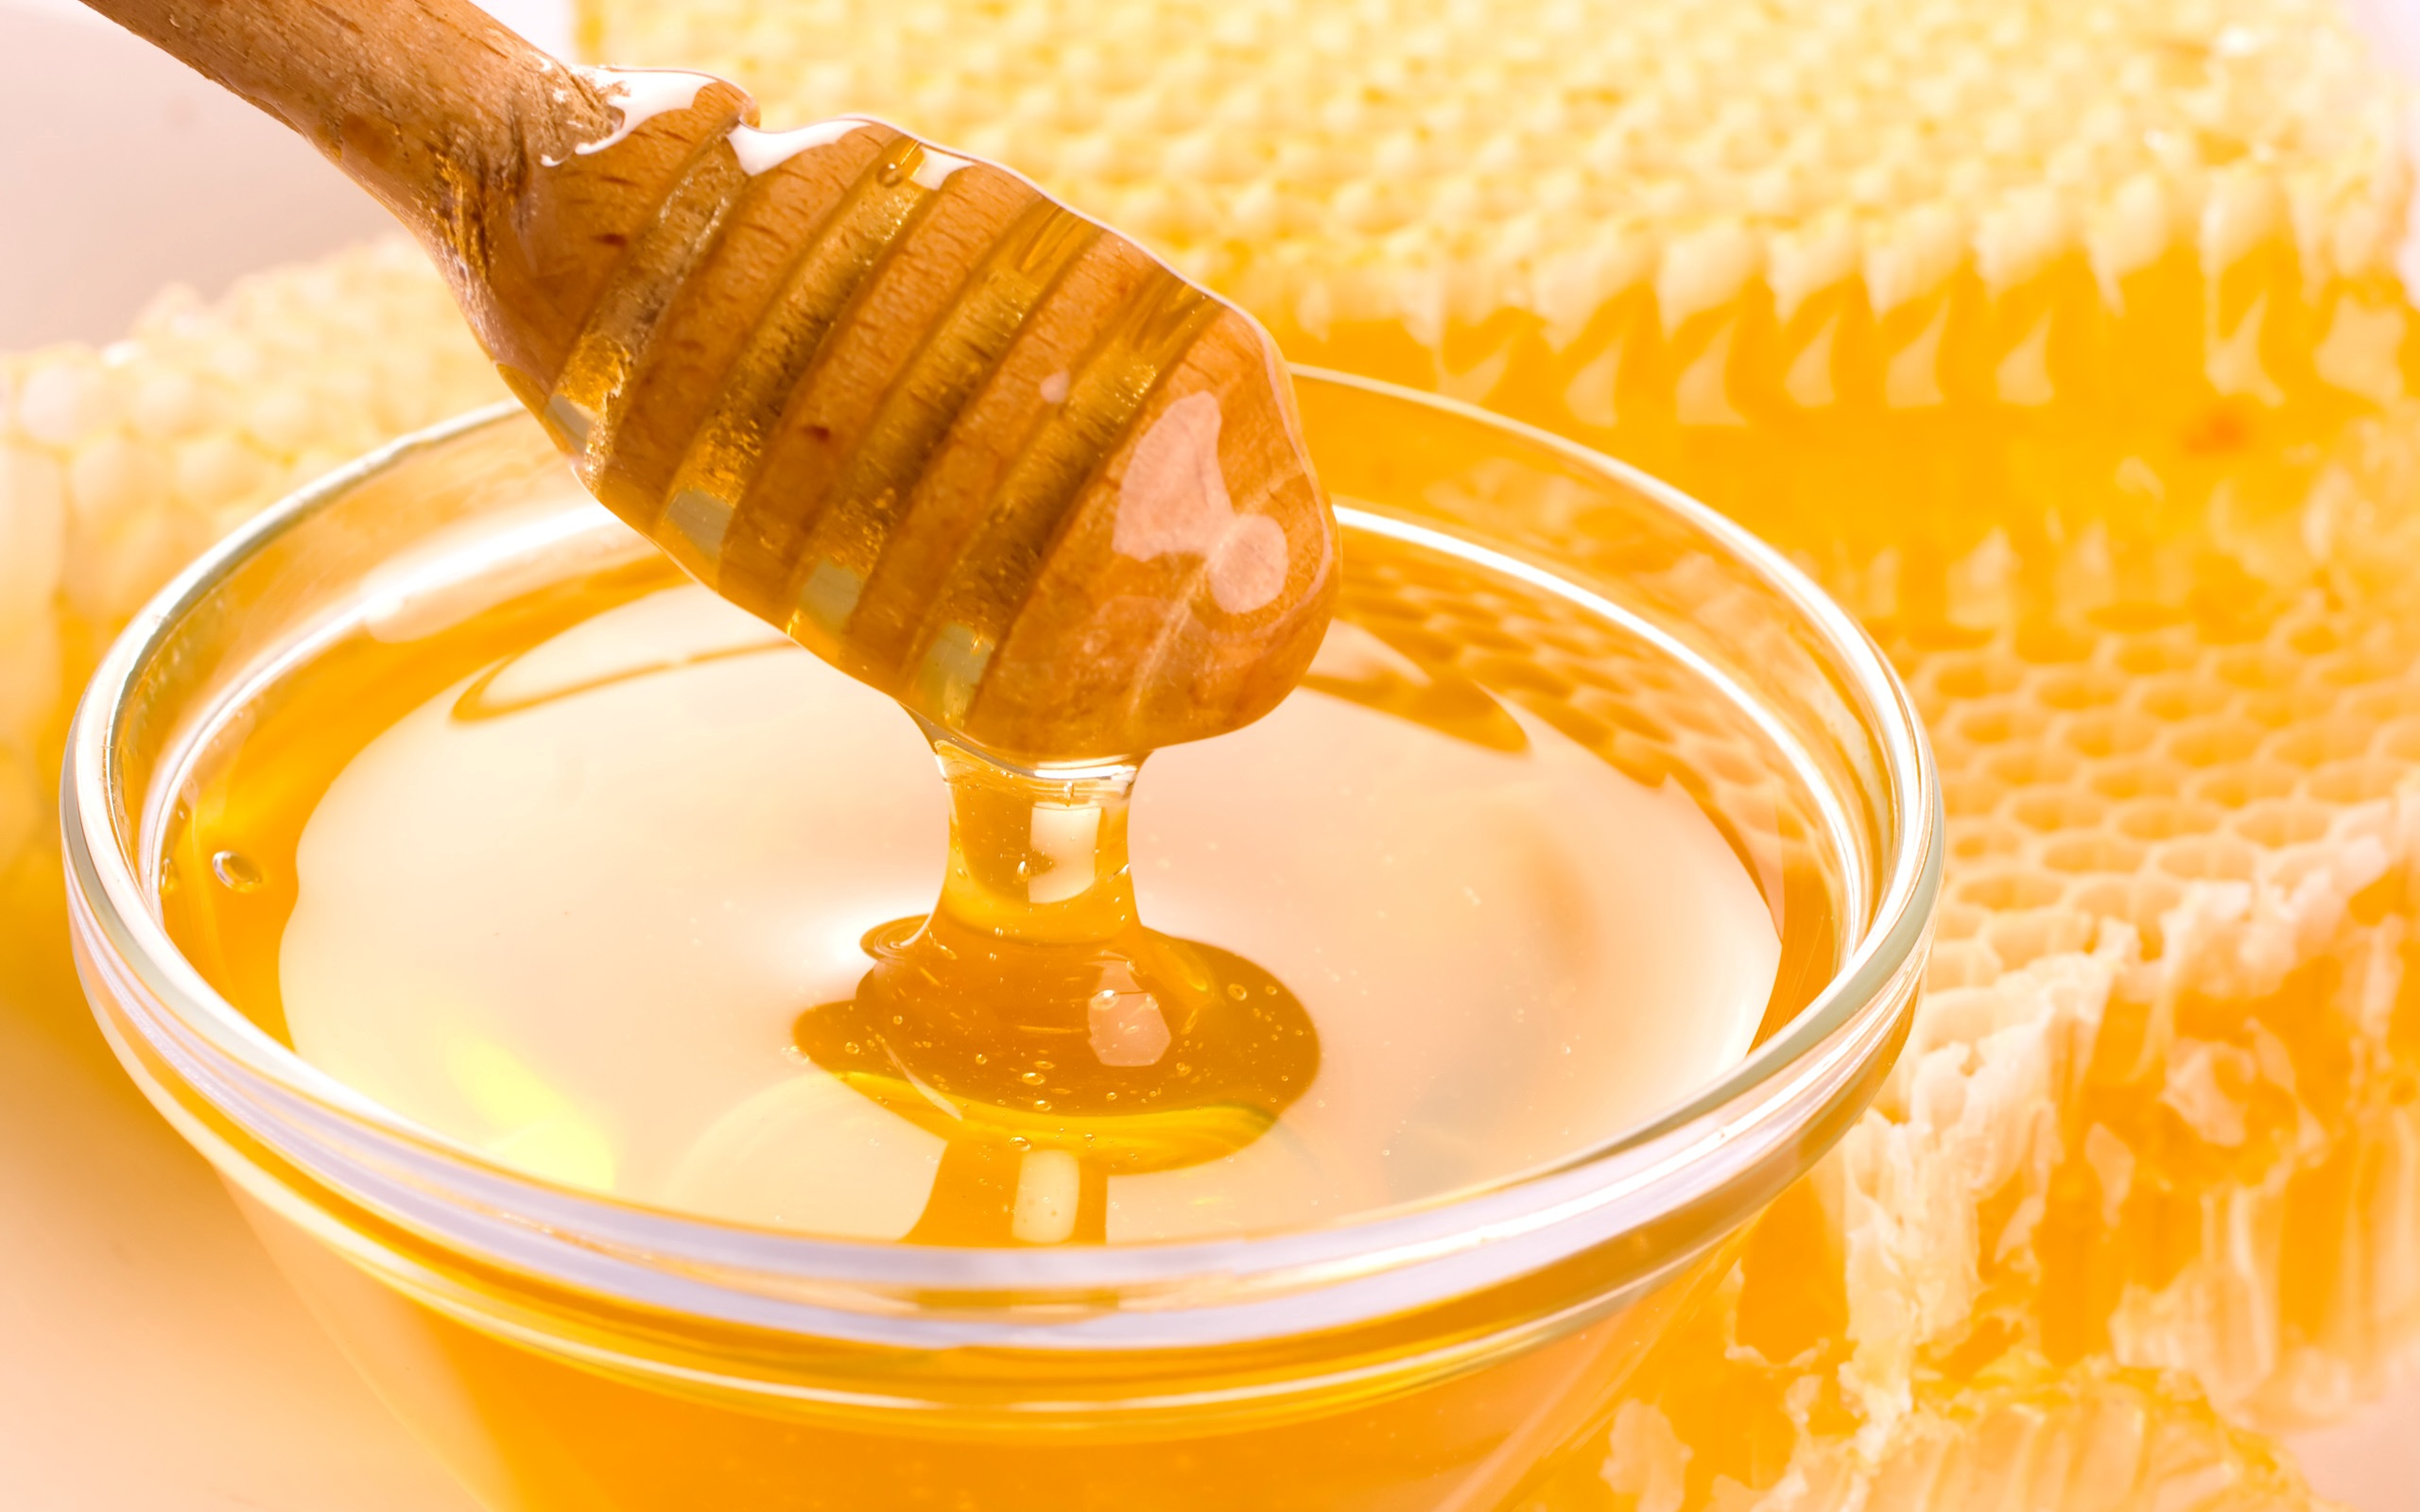 للعسل فوائد عديدة أبرزها فوائد العسل في المرض والوقاية من الفيروسات